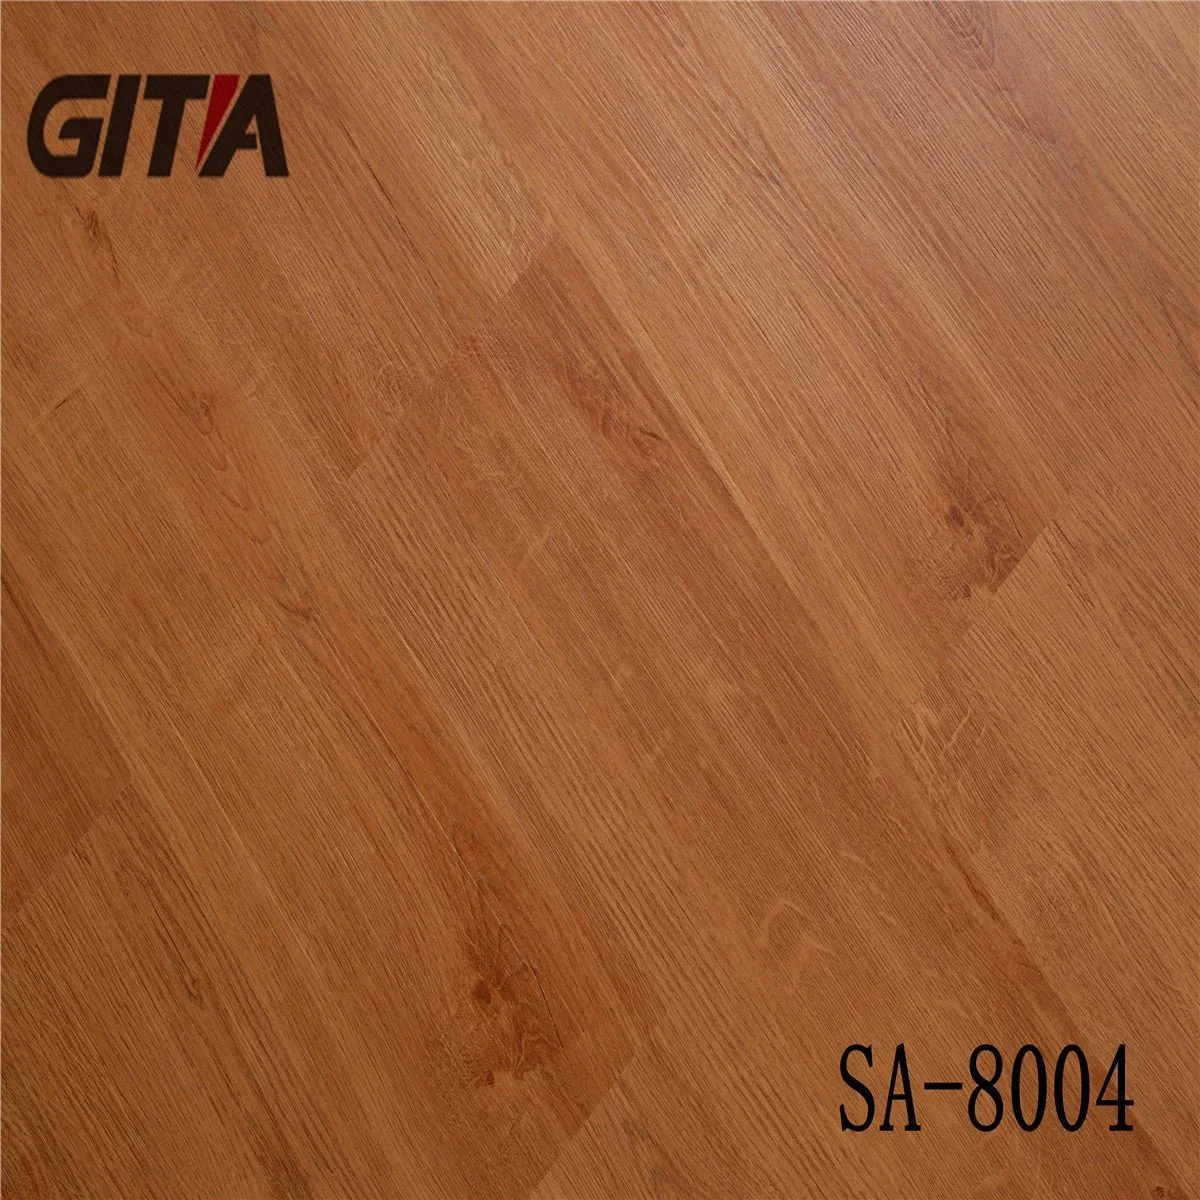 Gitia Eco- Friendly Environmental Waterproof Fireproof Indoor Click Spc Vinyl Flooring